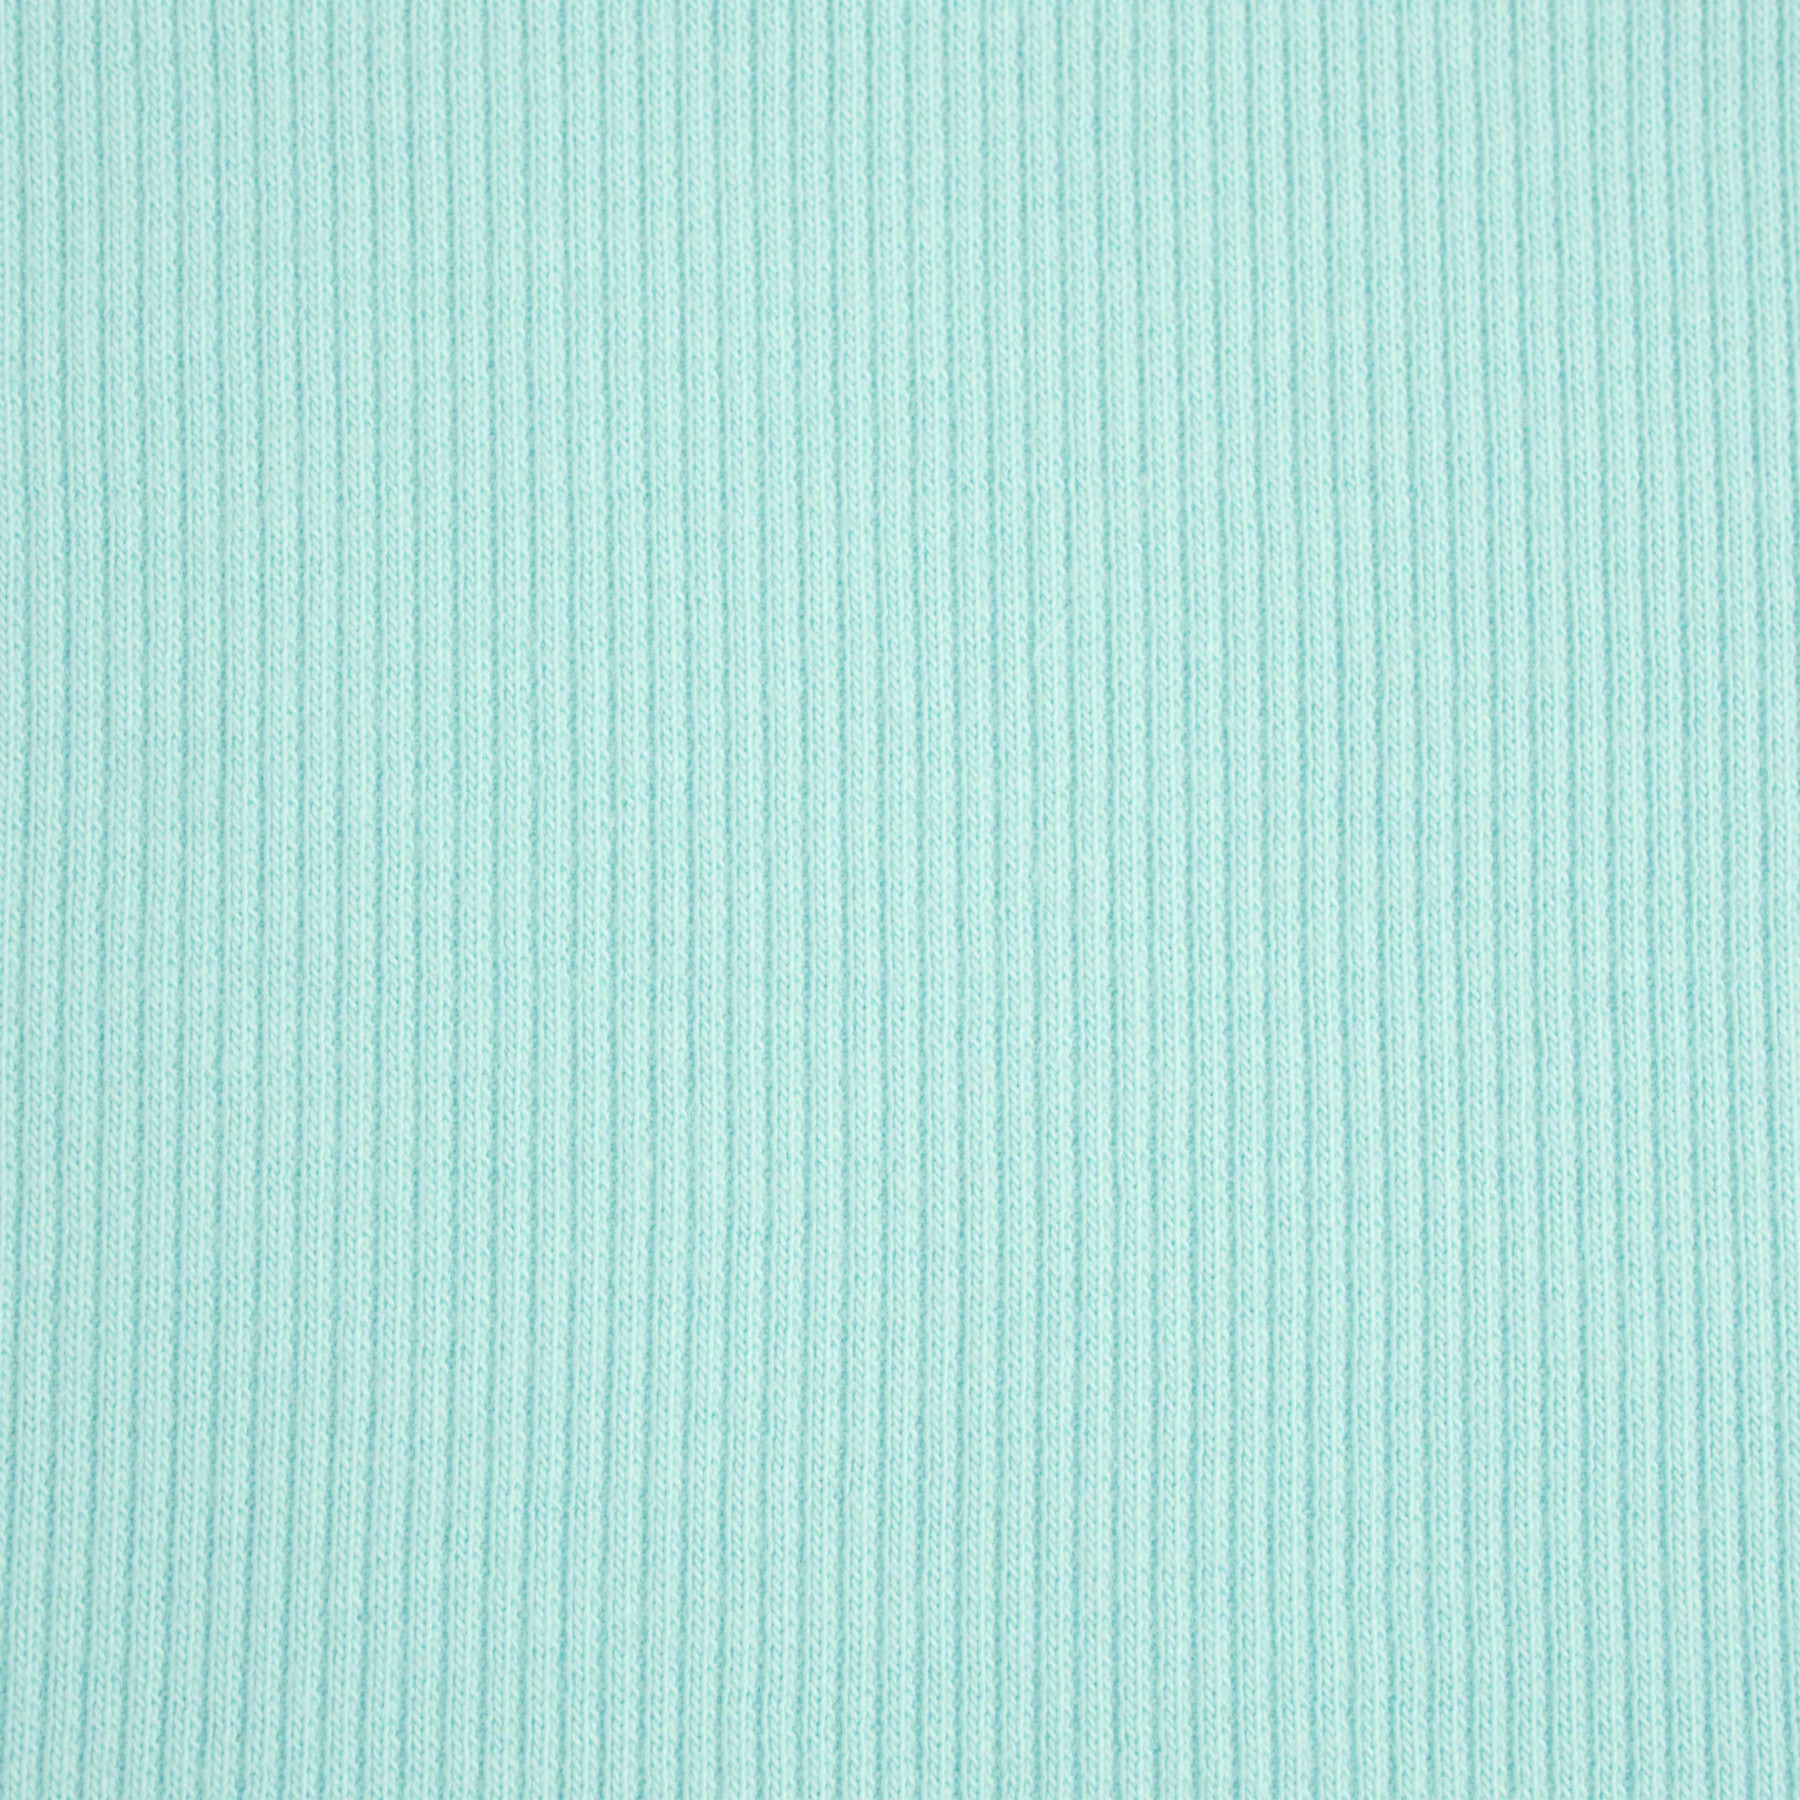 D-180 AQUA - Ribbed knit fabric